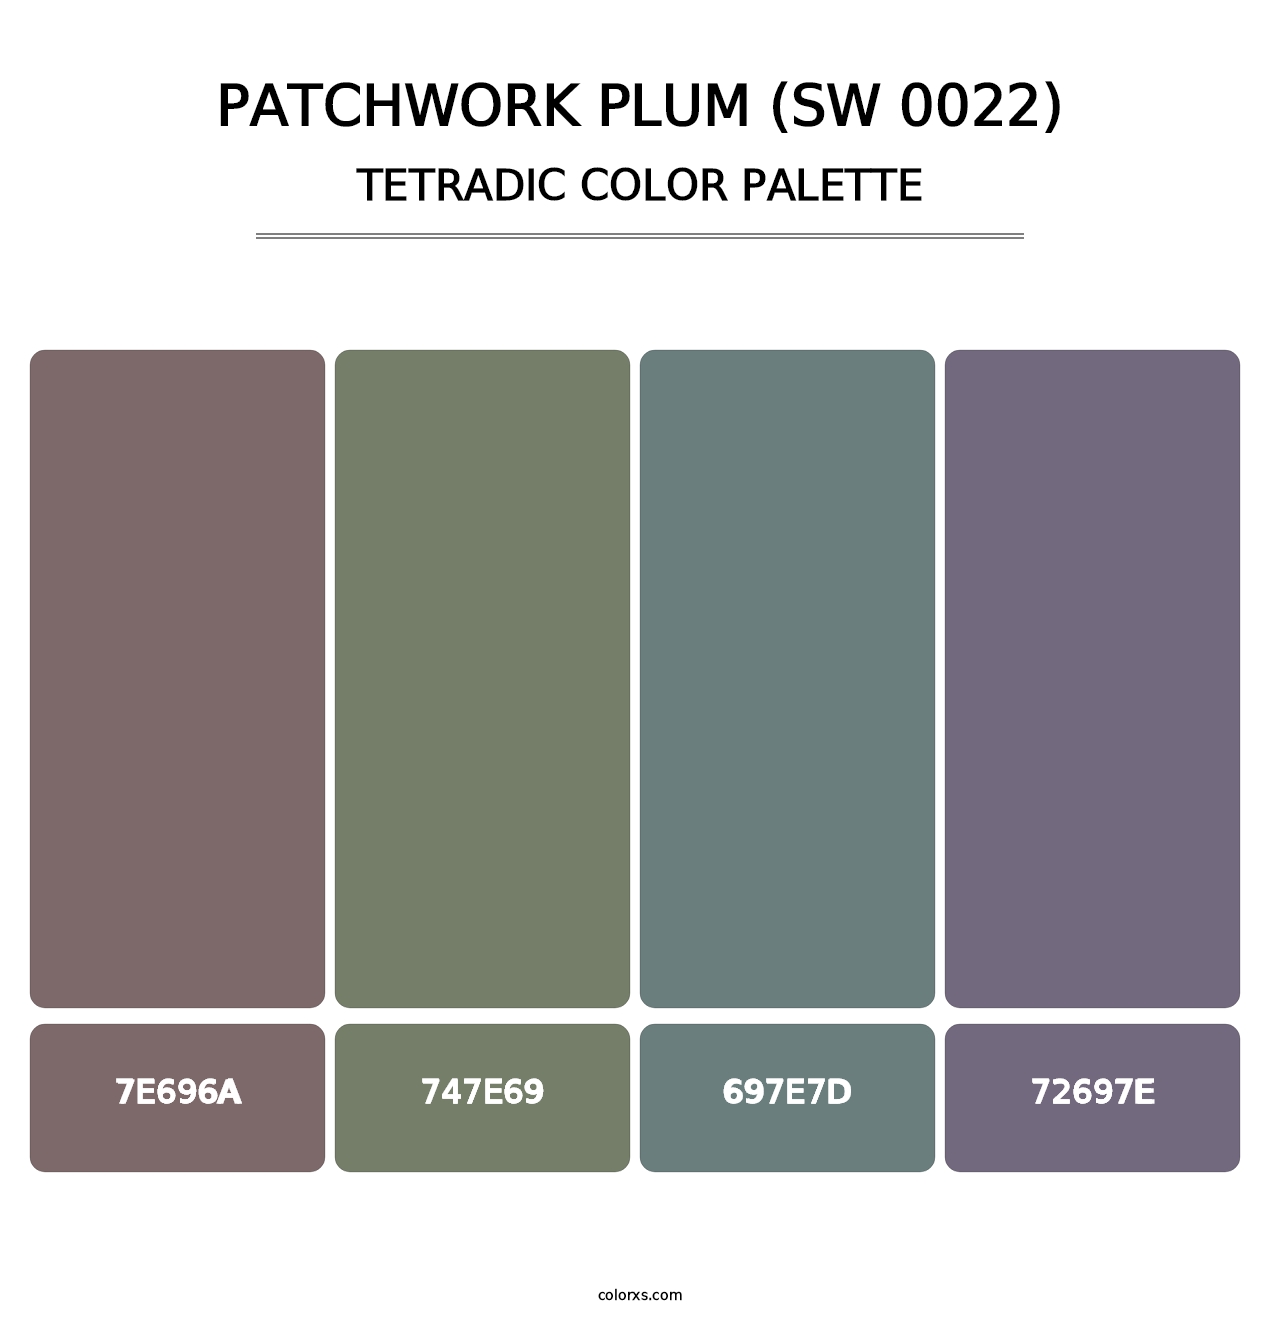 Patchwork Plum (SW 0022) - Tetradic Color Palette